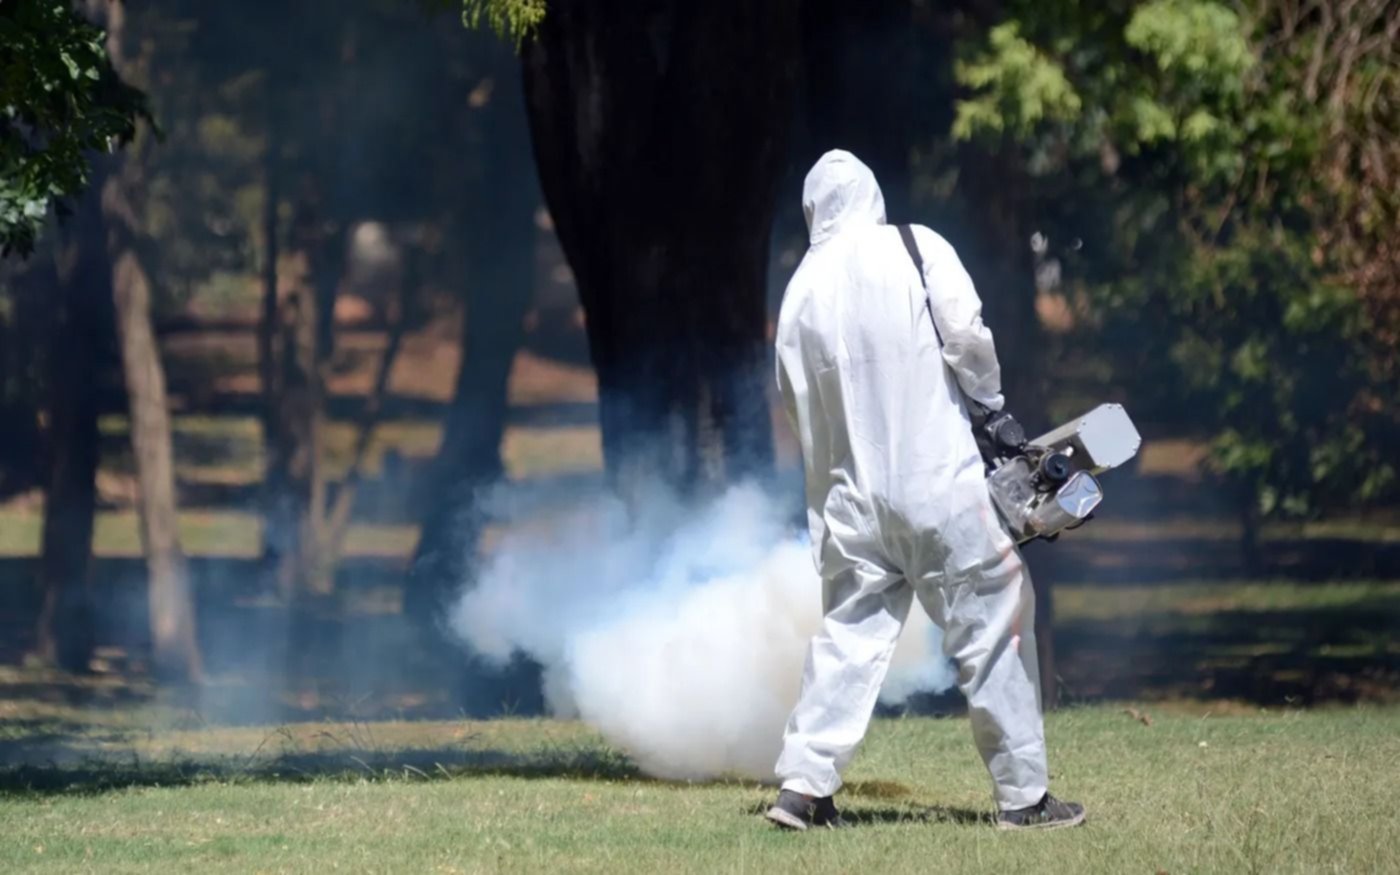 Nuevas tareas de fumigación, prevención y concientización contra el dengue en los barrios